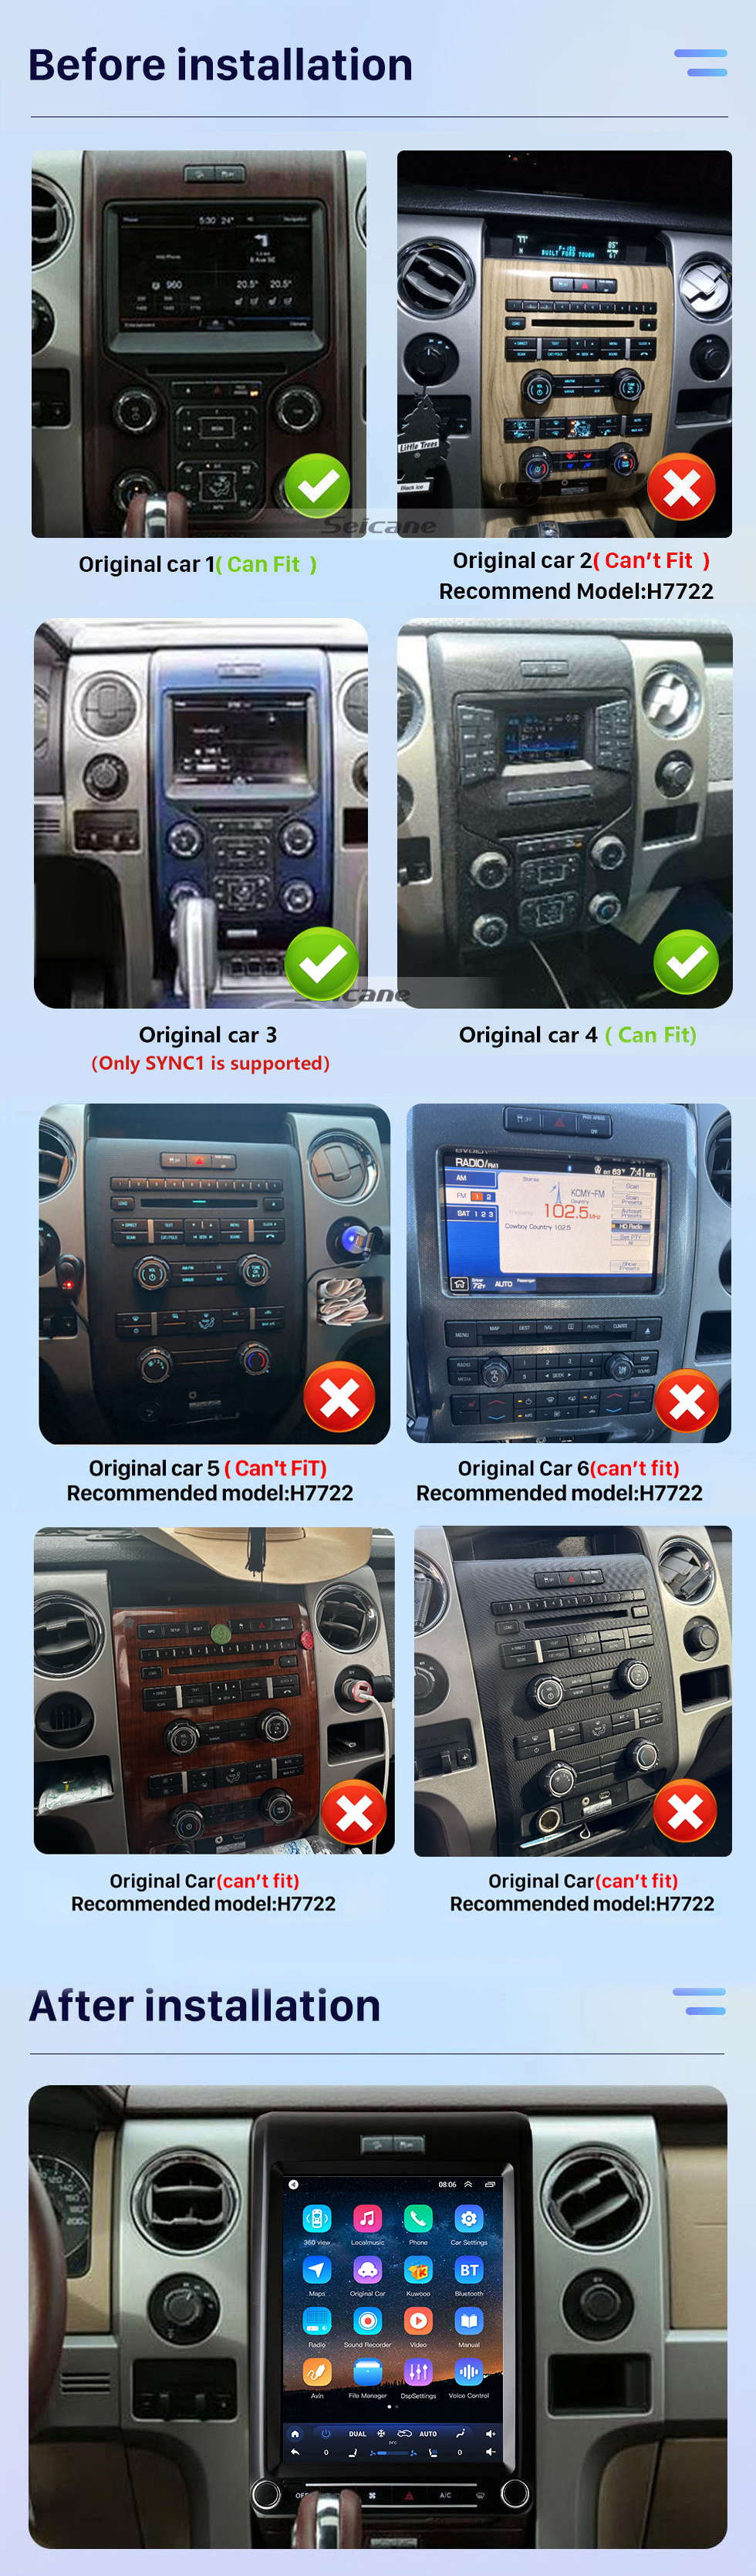 Seicane Pantalla táctil HD de 12,1 pulgadas para Ford F150 Mustang 2009-2013, Radio estéreo para coche con RDS DSP, Bluetooth, compatible con navegación GPS, cámara de 360°